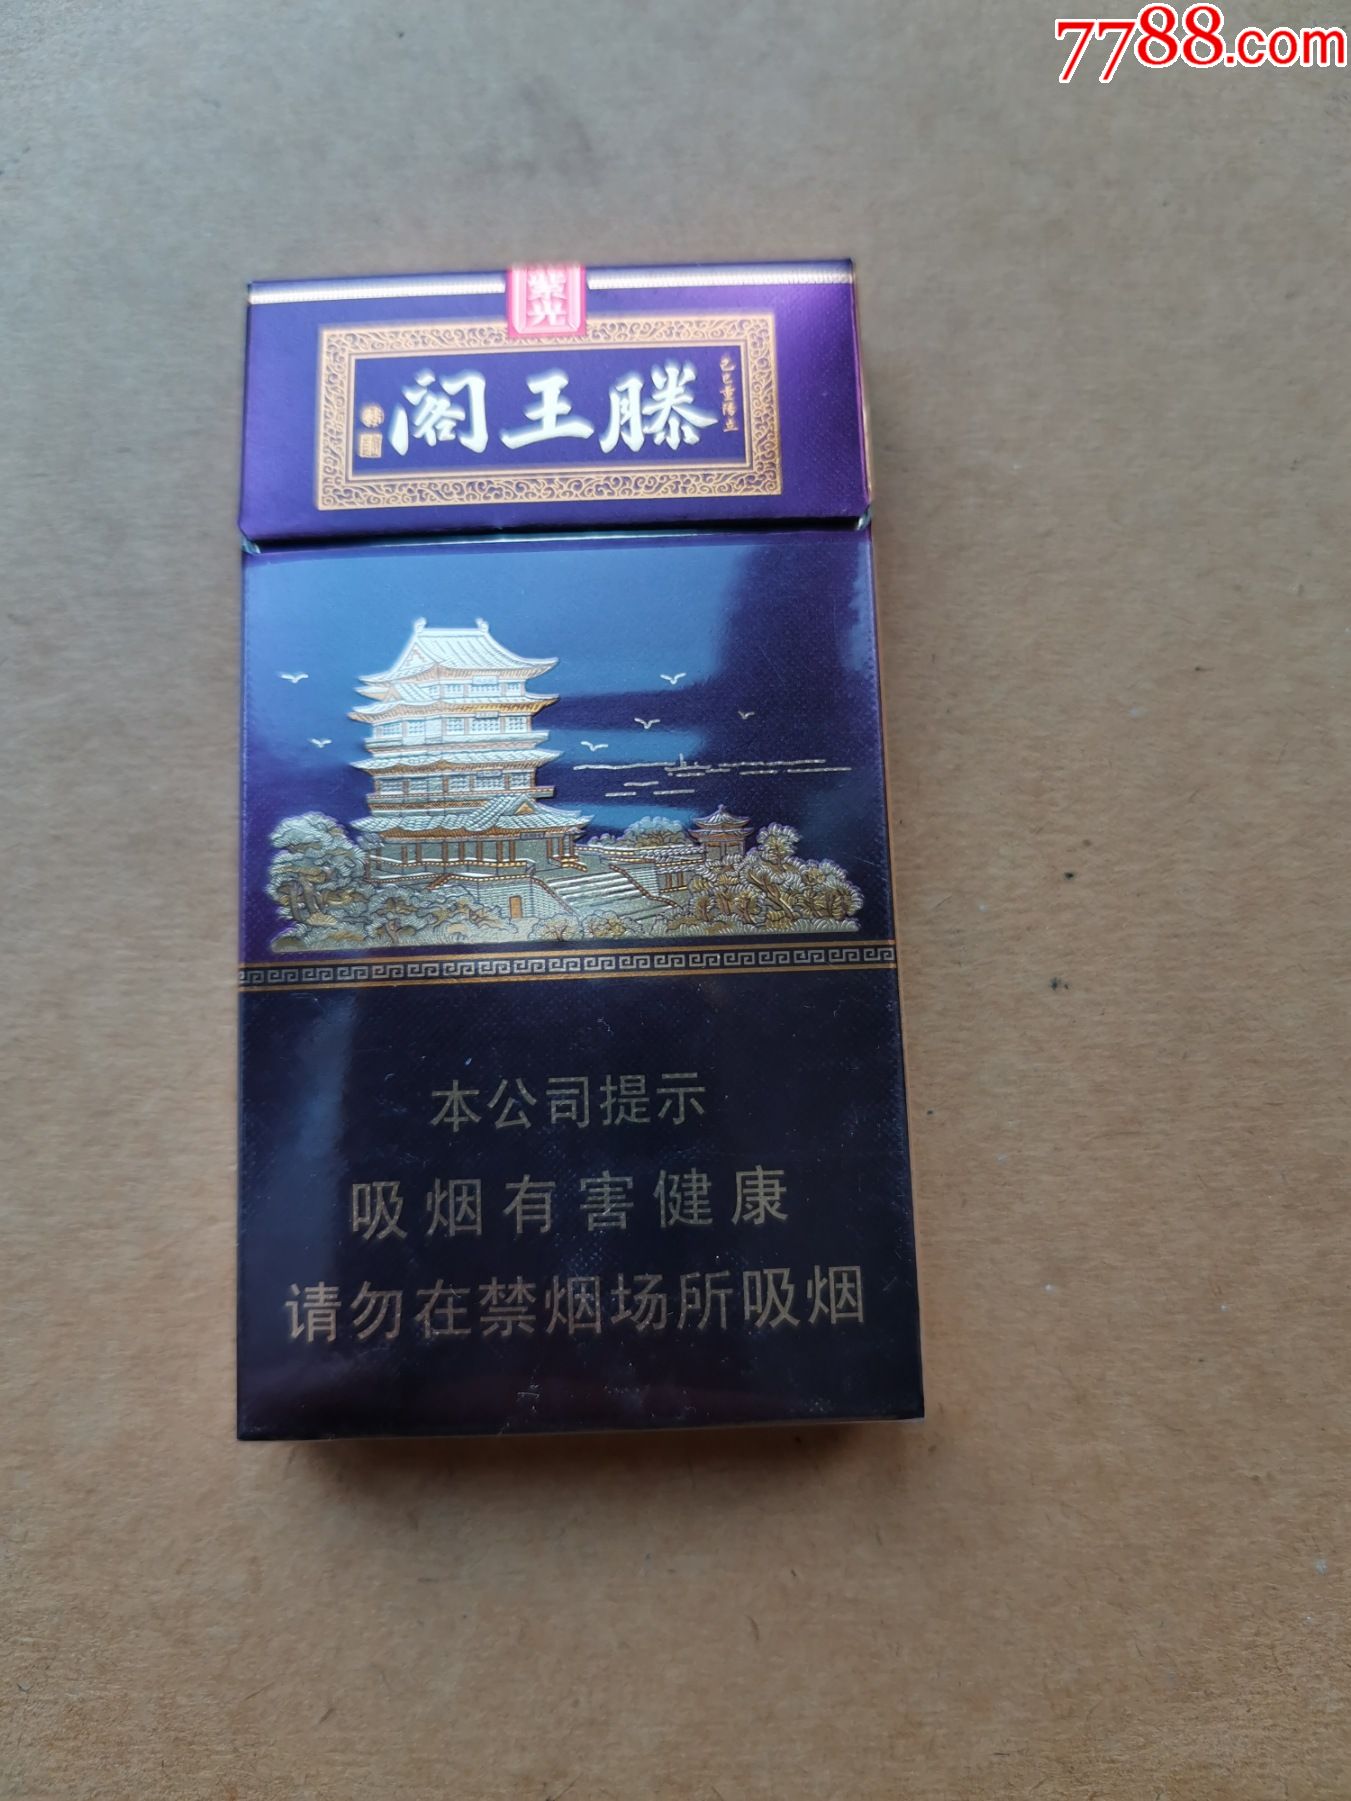 滕王阁系列香烟图片